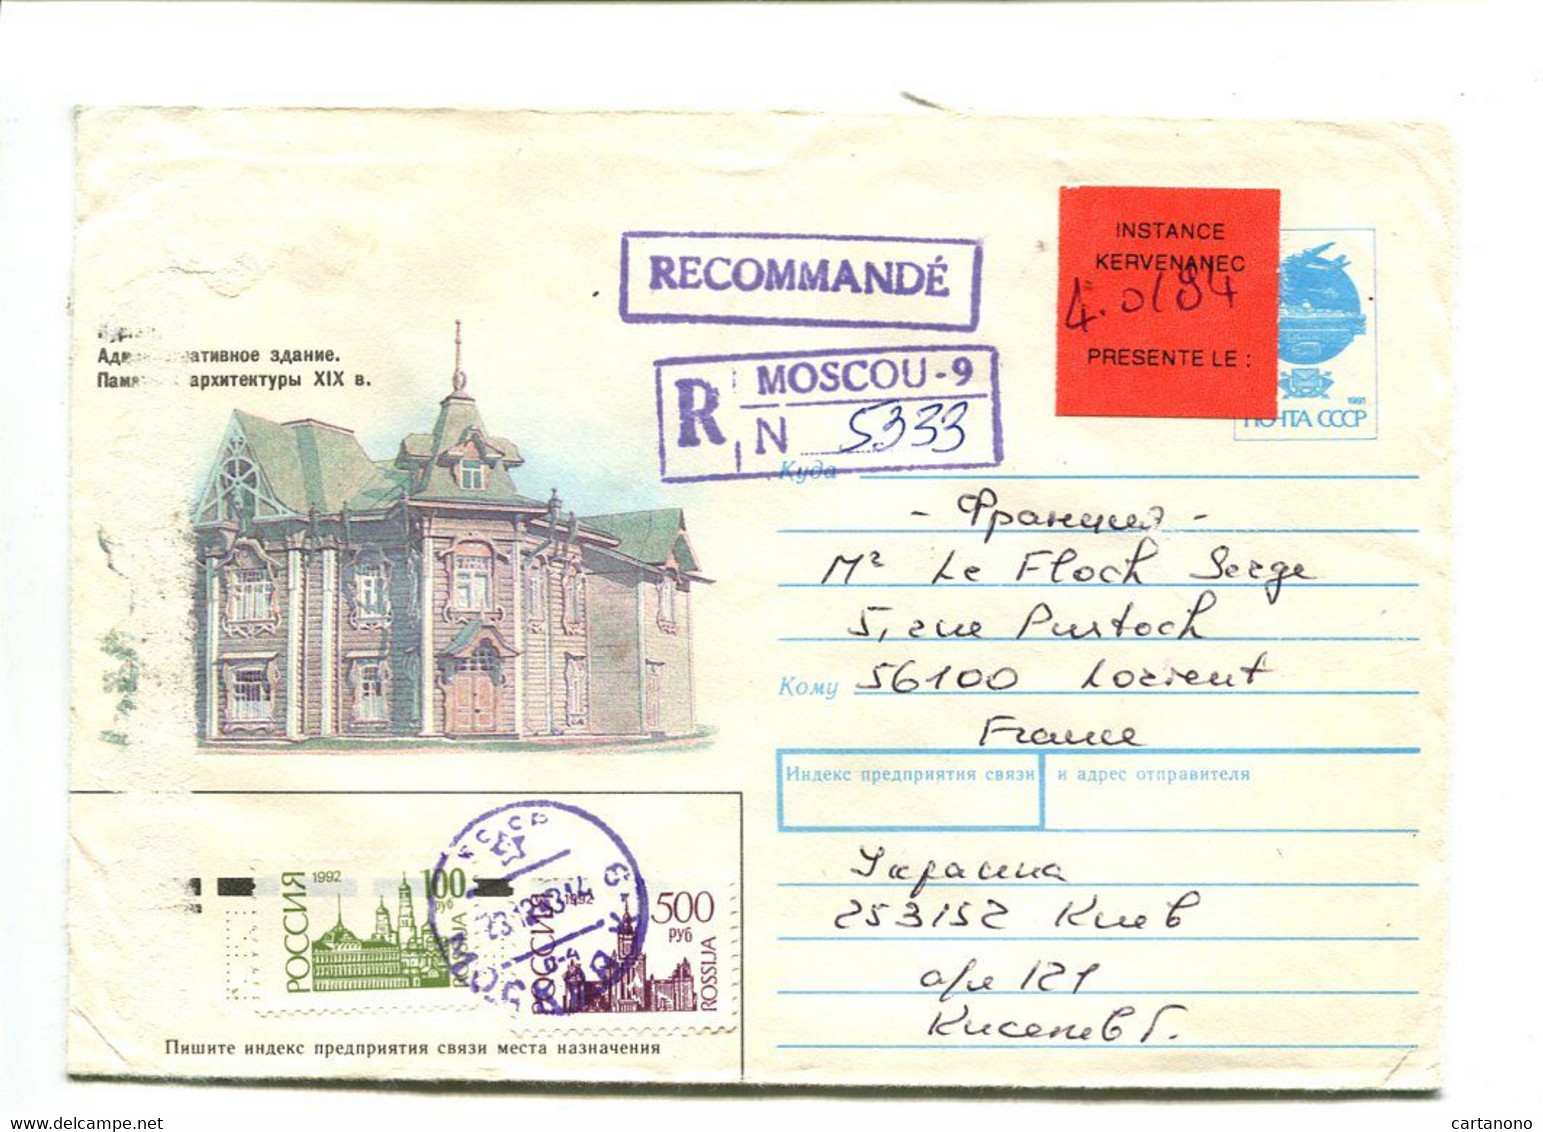 RUSSIE Moscou 1994 - Entier Postal Avec Complément D'affranchissement Pour Recommandation + Etiquette "Instance..." - Brieven En Documenten